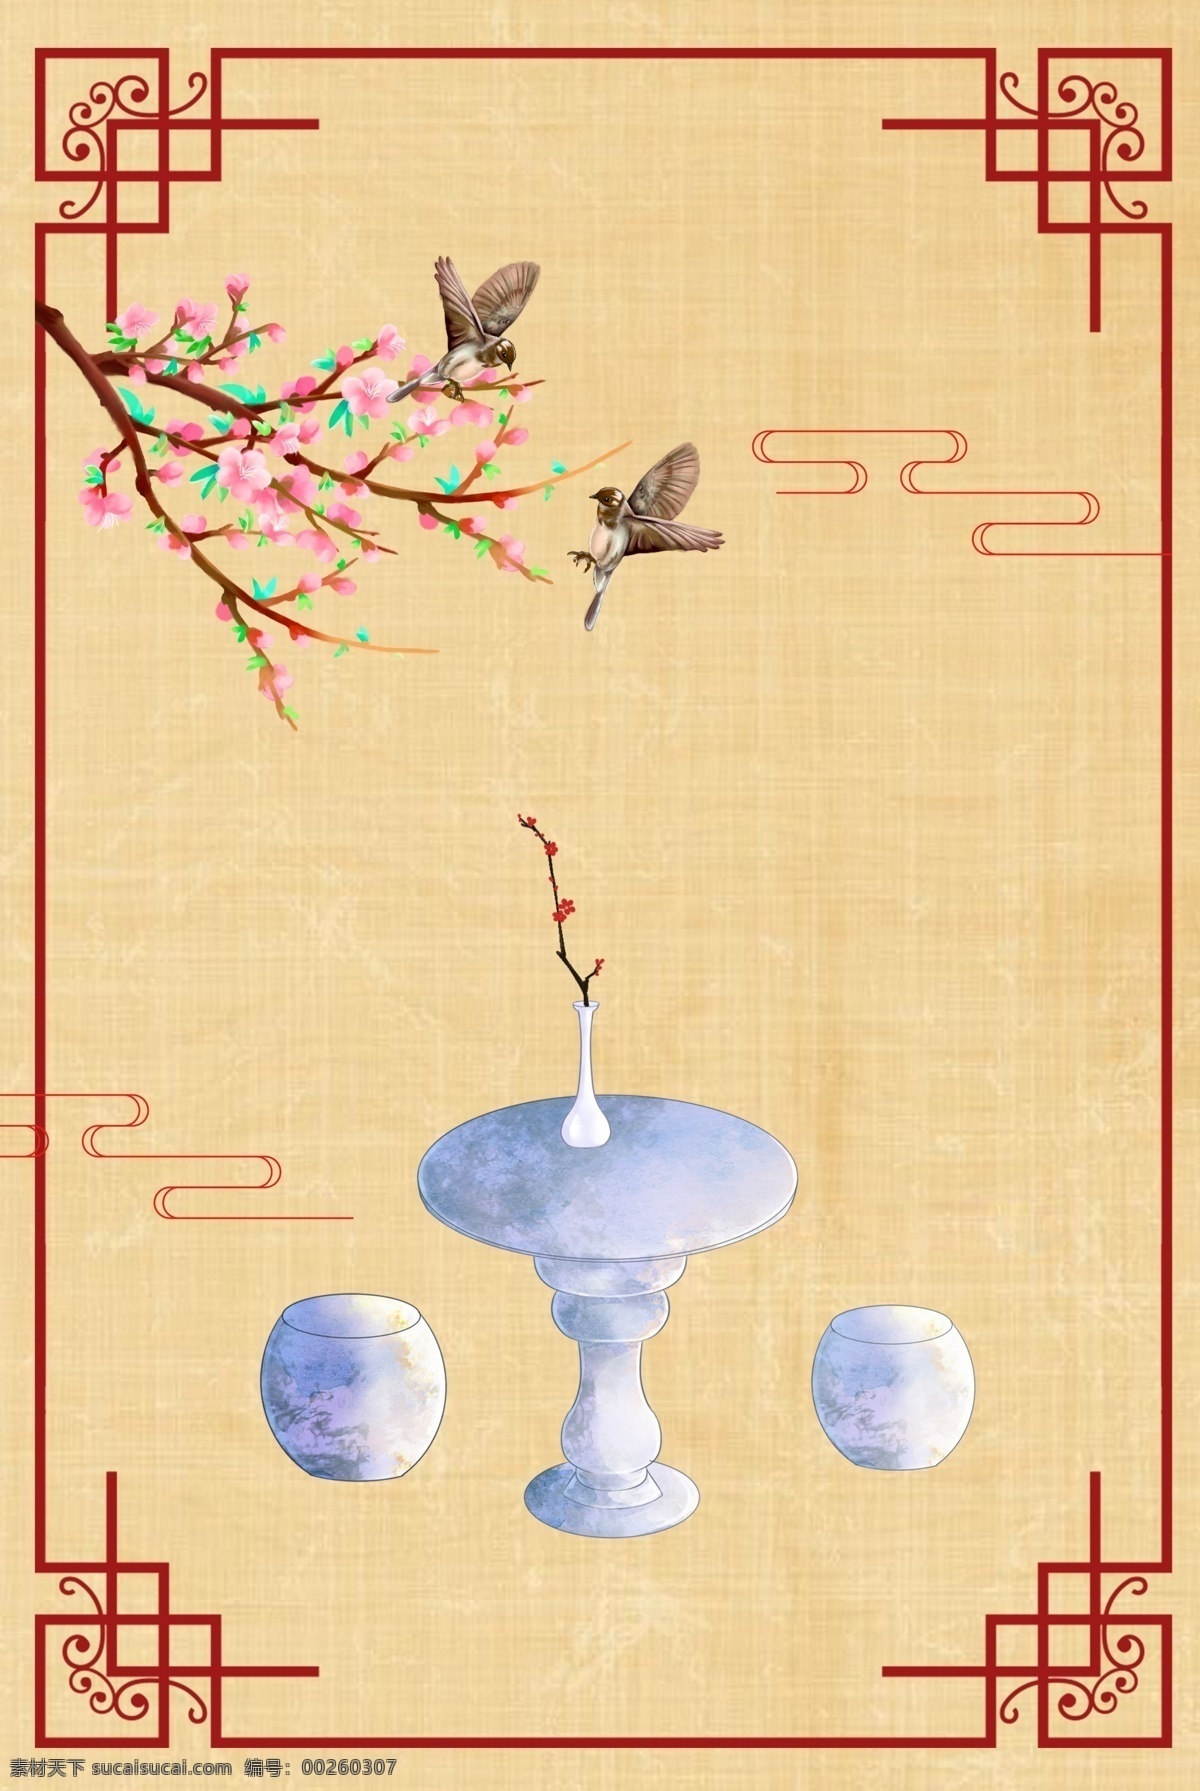 古典 中国 风 工笔画 石 桌 石凳 花鸟 背景 图 中国风 石桌 psd分层 边框 背景图